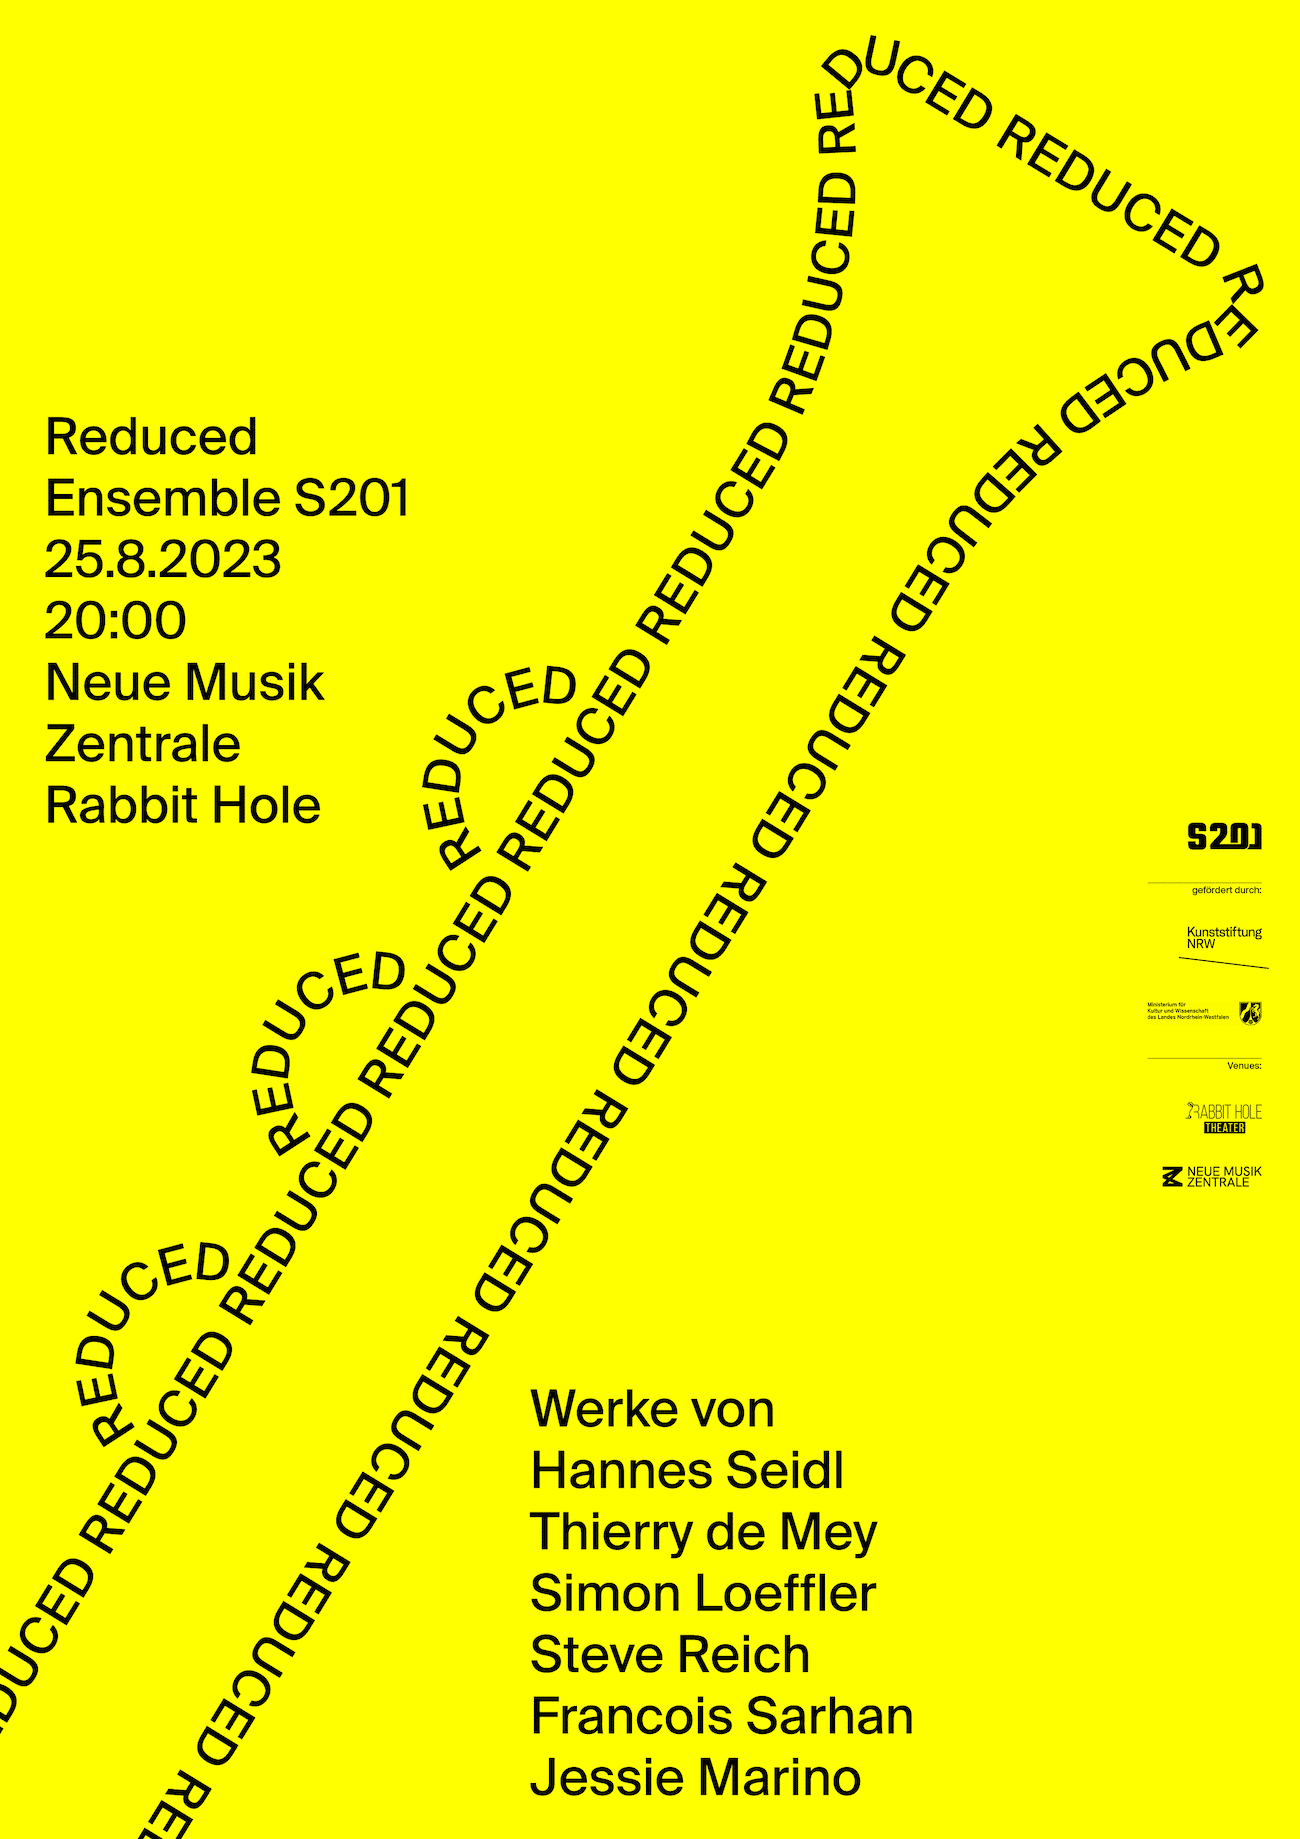 Reduced-Plakatdesign mit schwarzer Typografie (Klarinette?) auf Gelb vom Ensemble201 und Philip Jursch